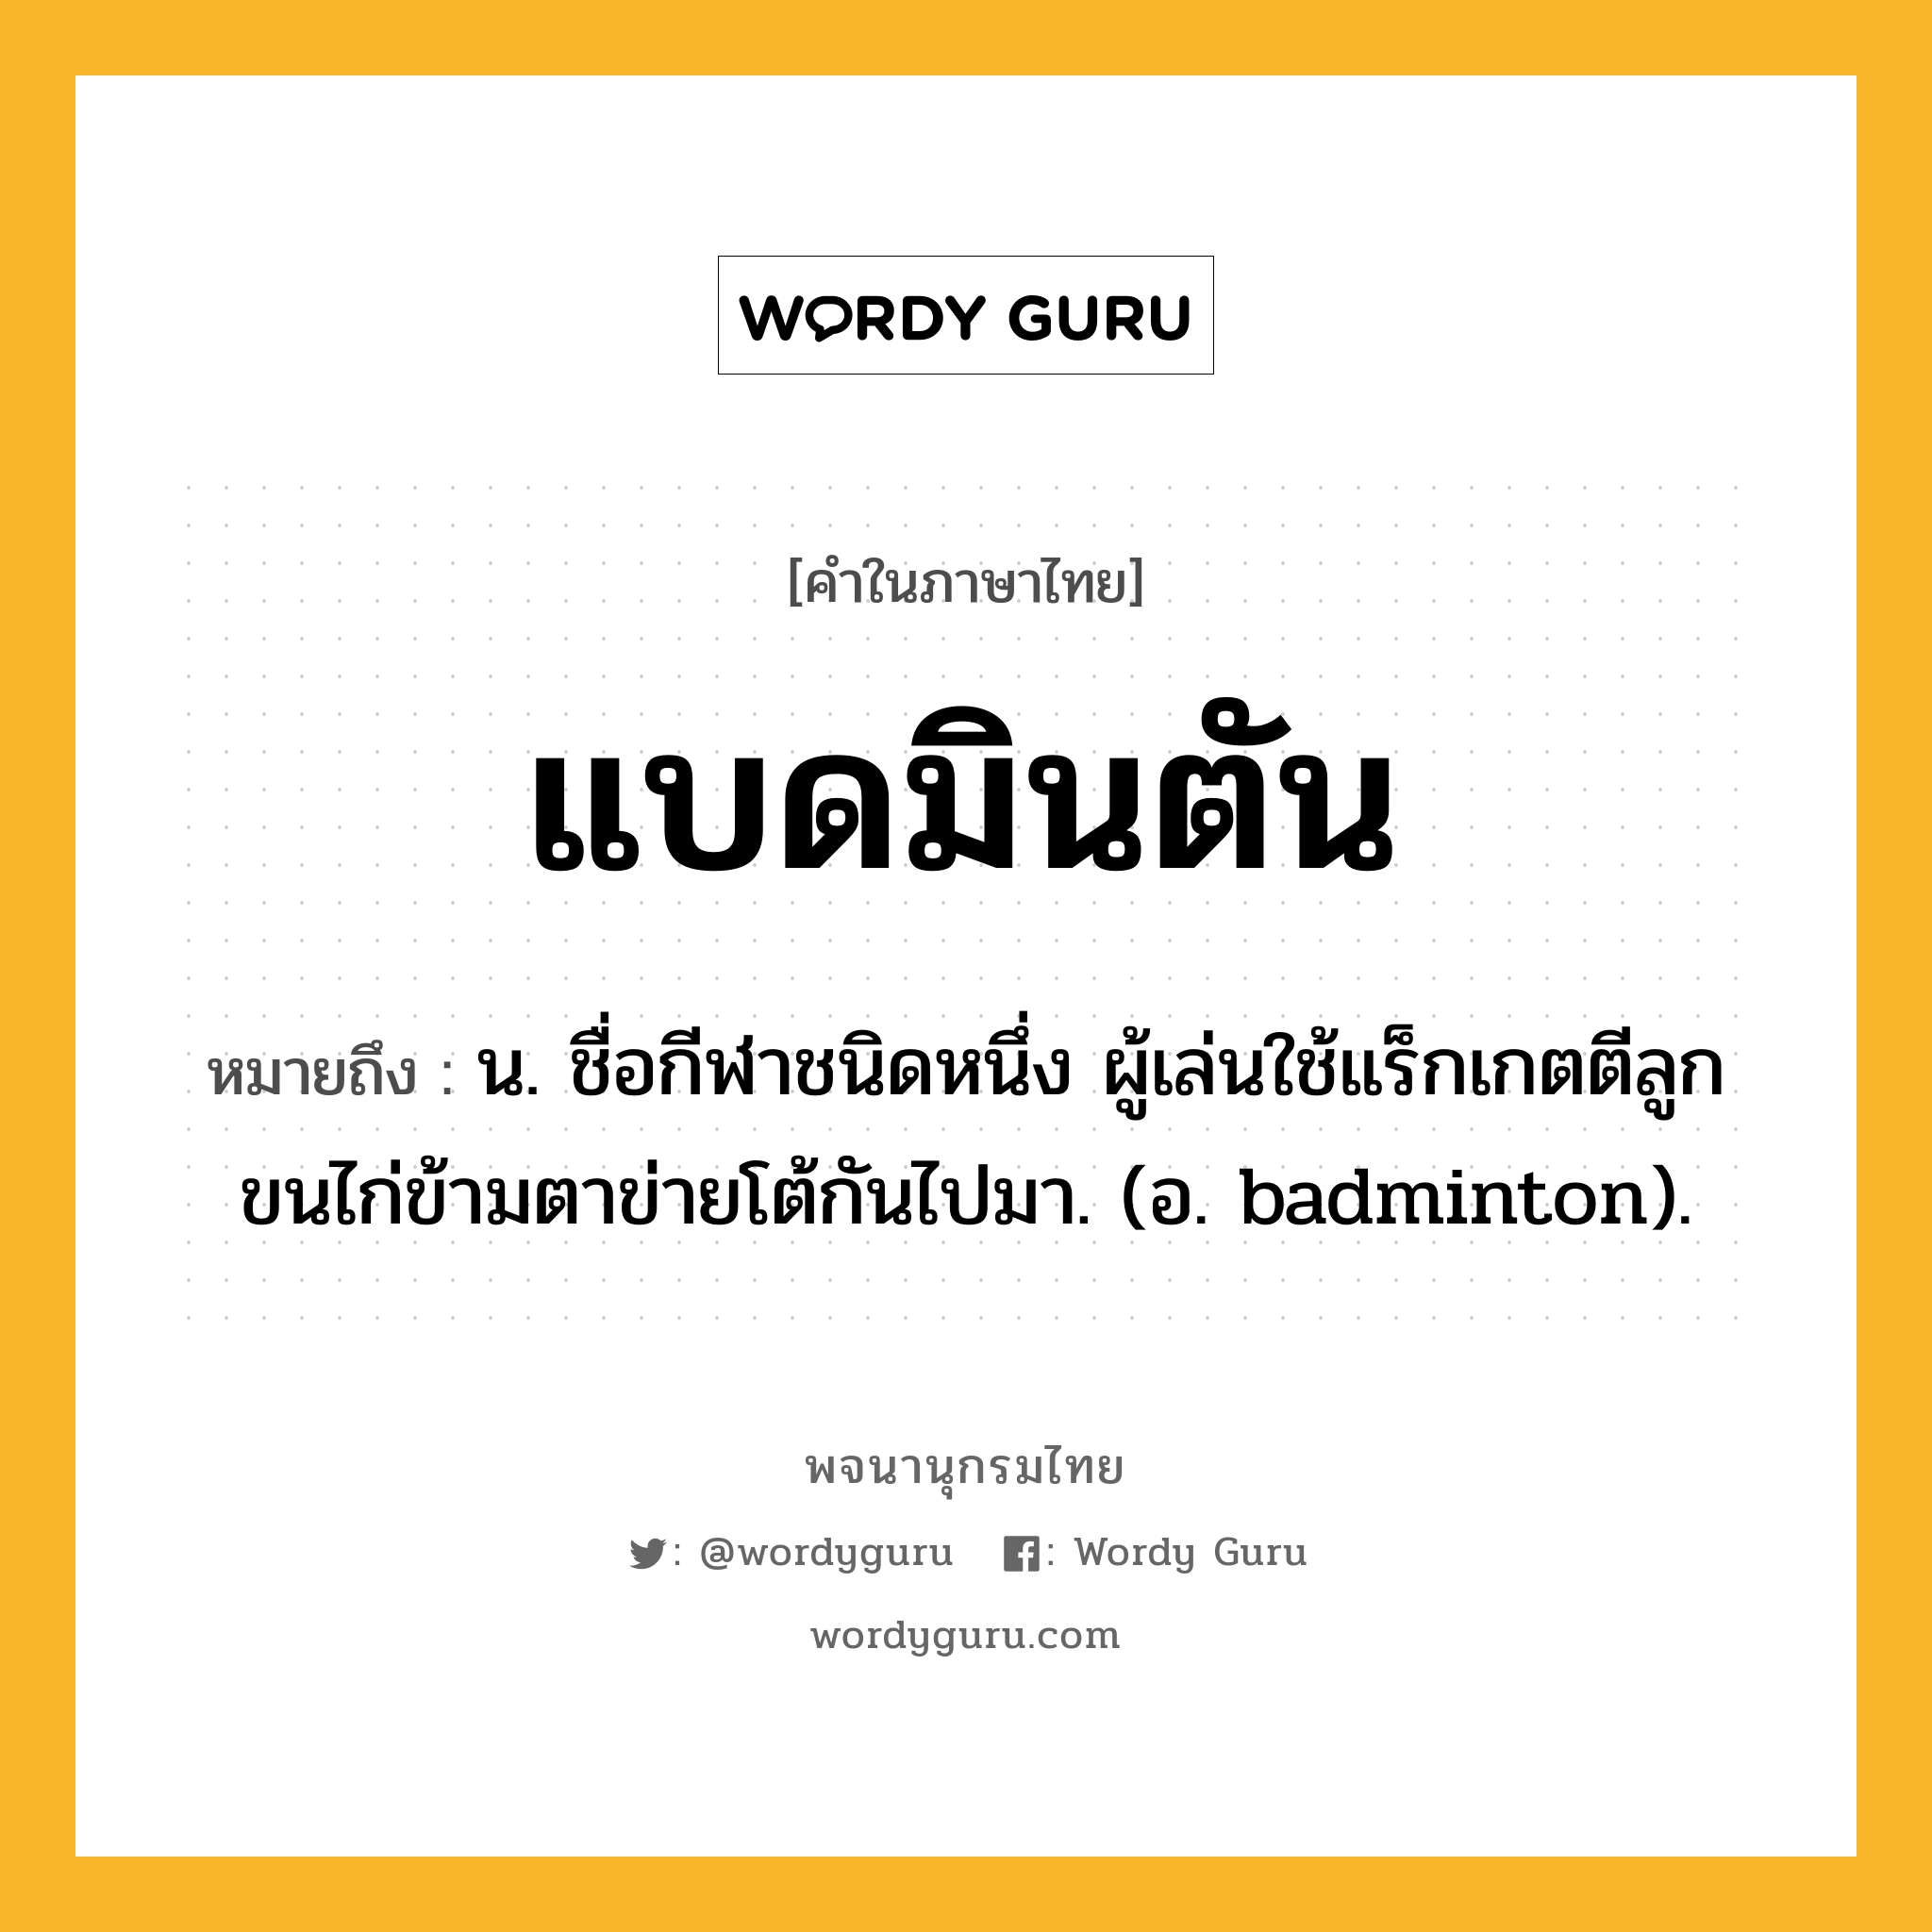 แบดมินตัน หมายถึงอะไร?, คำในภาษาไทย แบดมินตัน หมายถึง น. ชื่อกีฬาชนิดหนึ่ง ผู้เล่นใช้แร็กเกตตีลูกขนไก่ข้ามตาข่ายโต้กันไปมา. (อ. badminton).